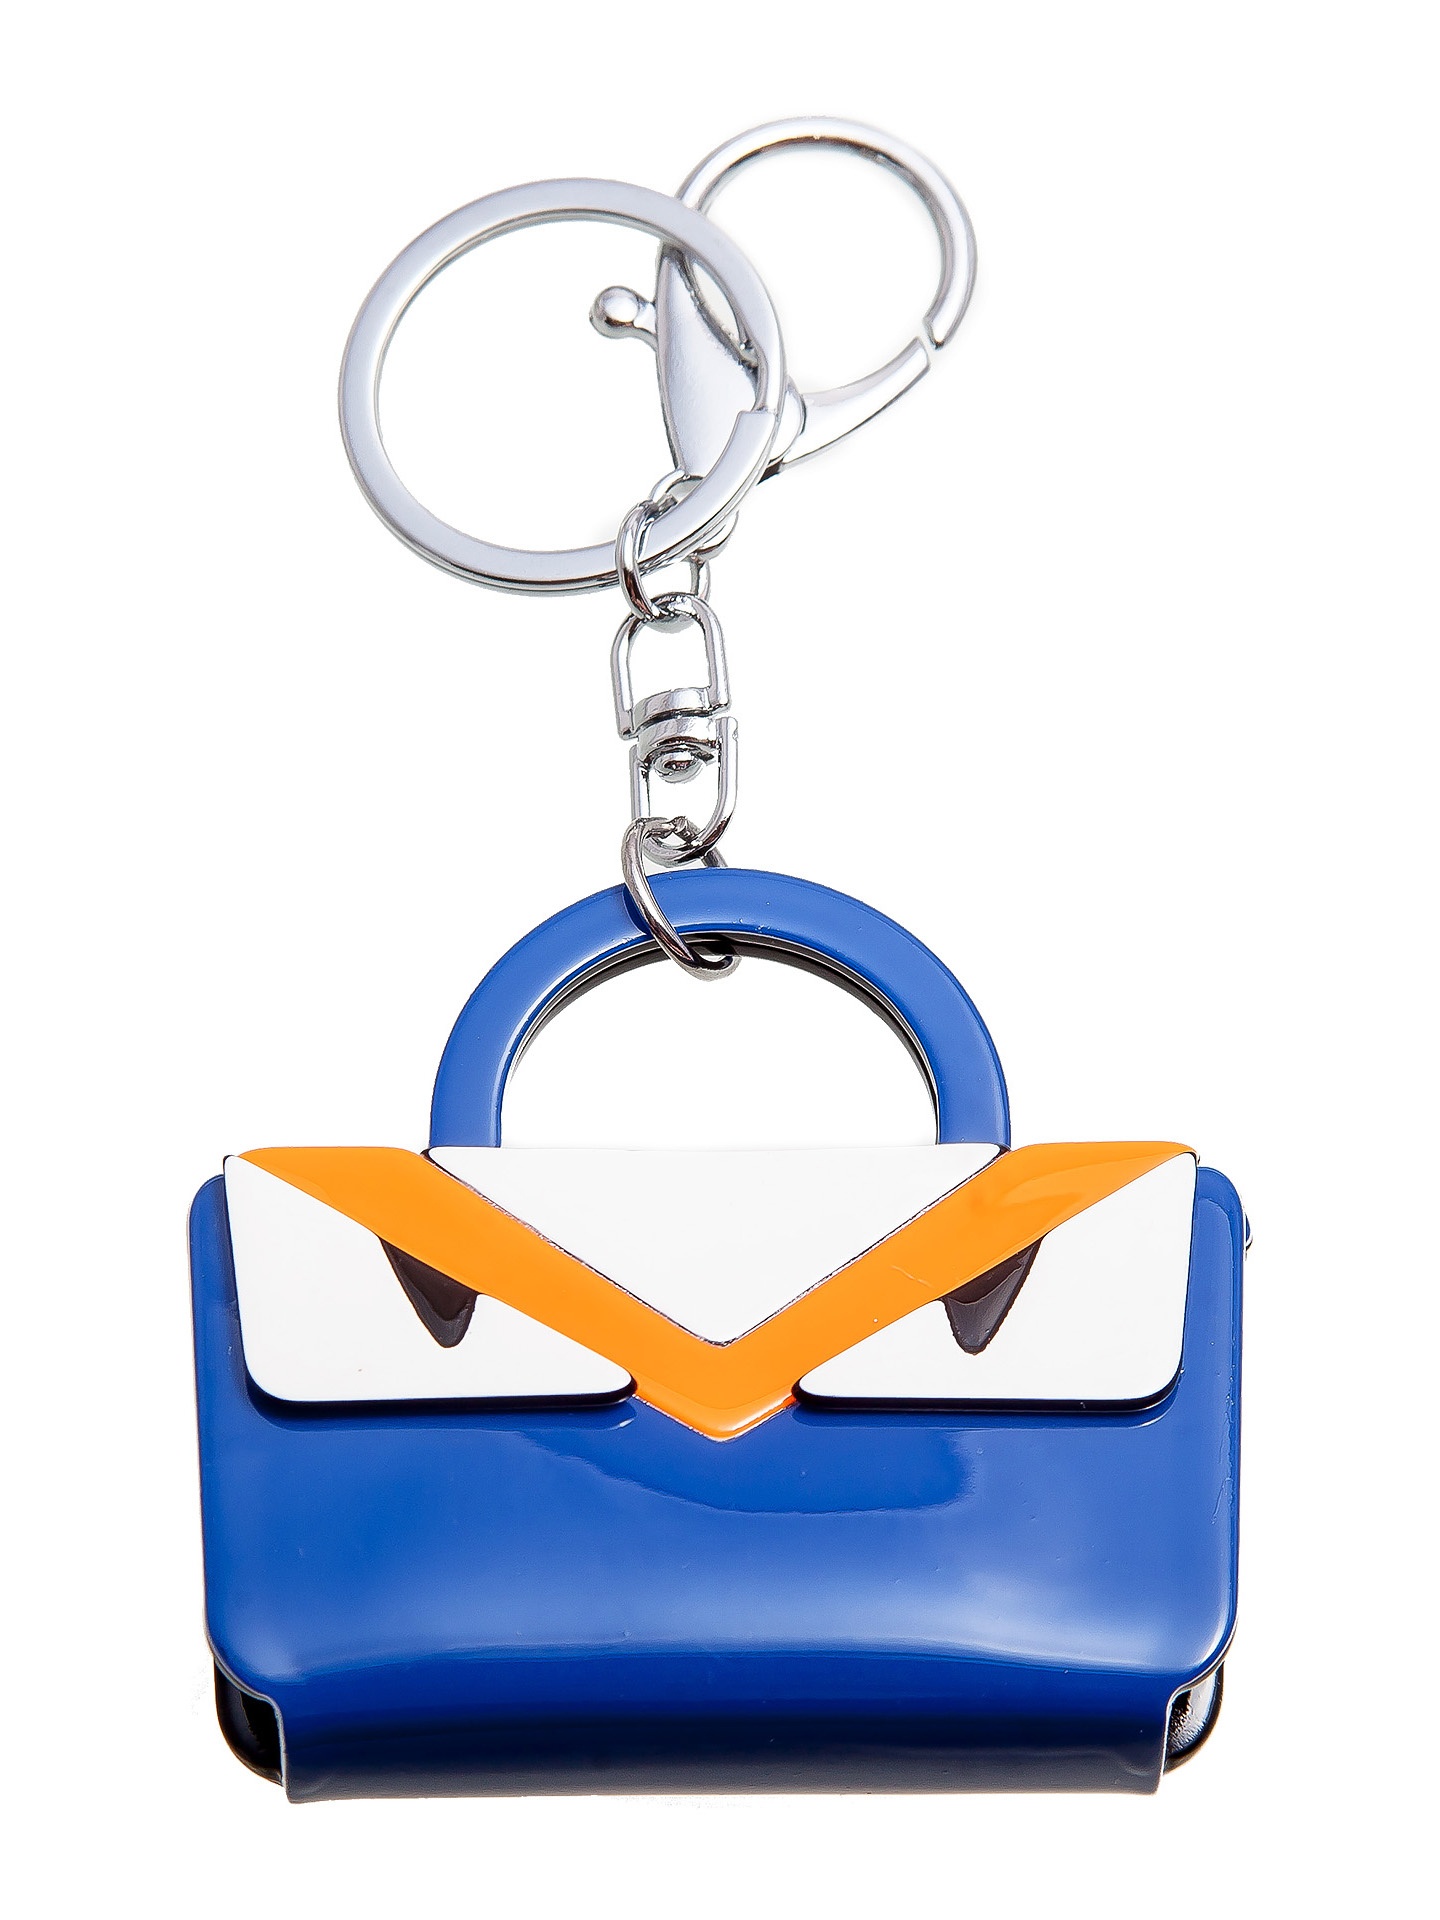 фото Брелок для сумки Aiyony Macie BREL901034, KR901034, синий, белый, оранжевый